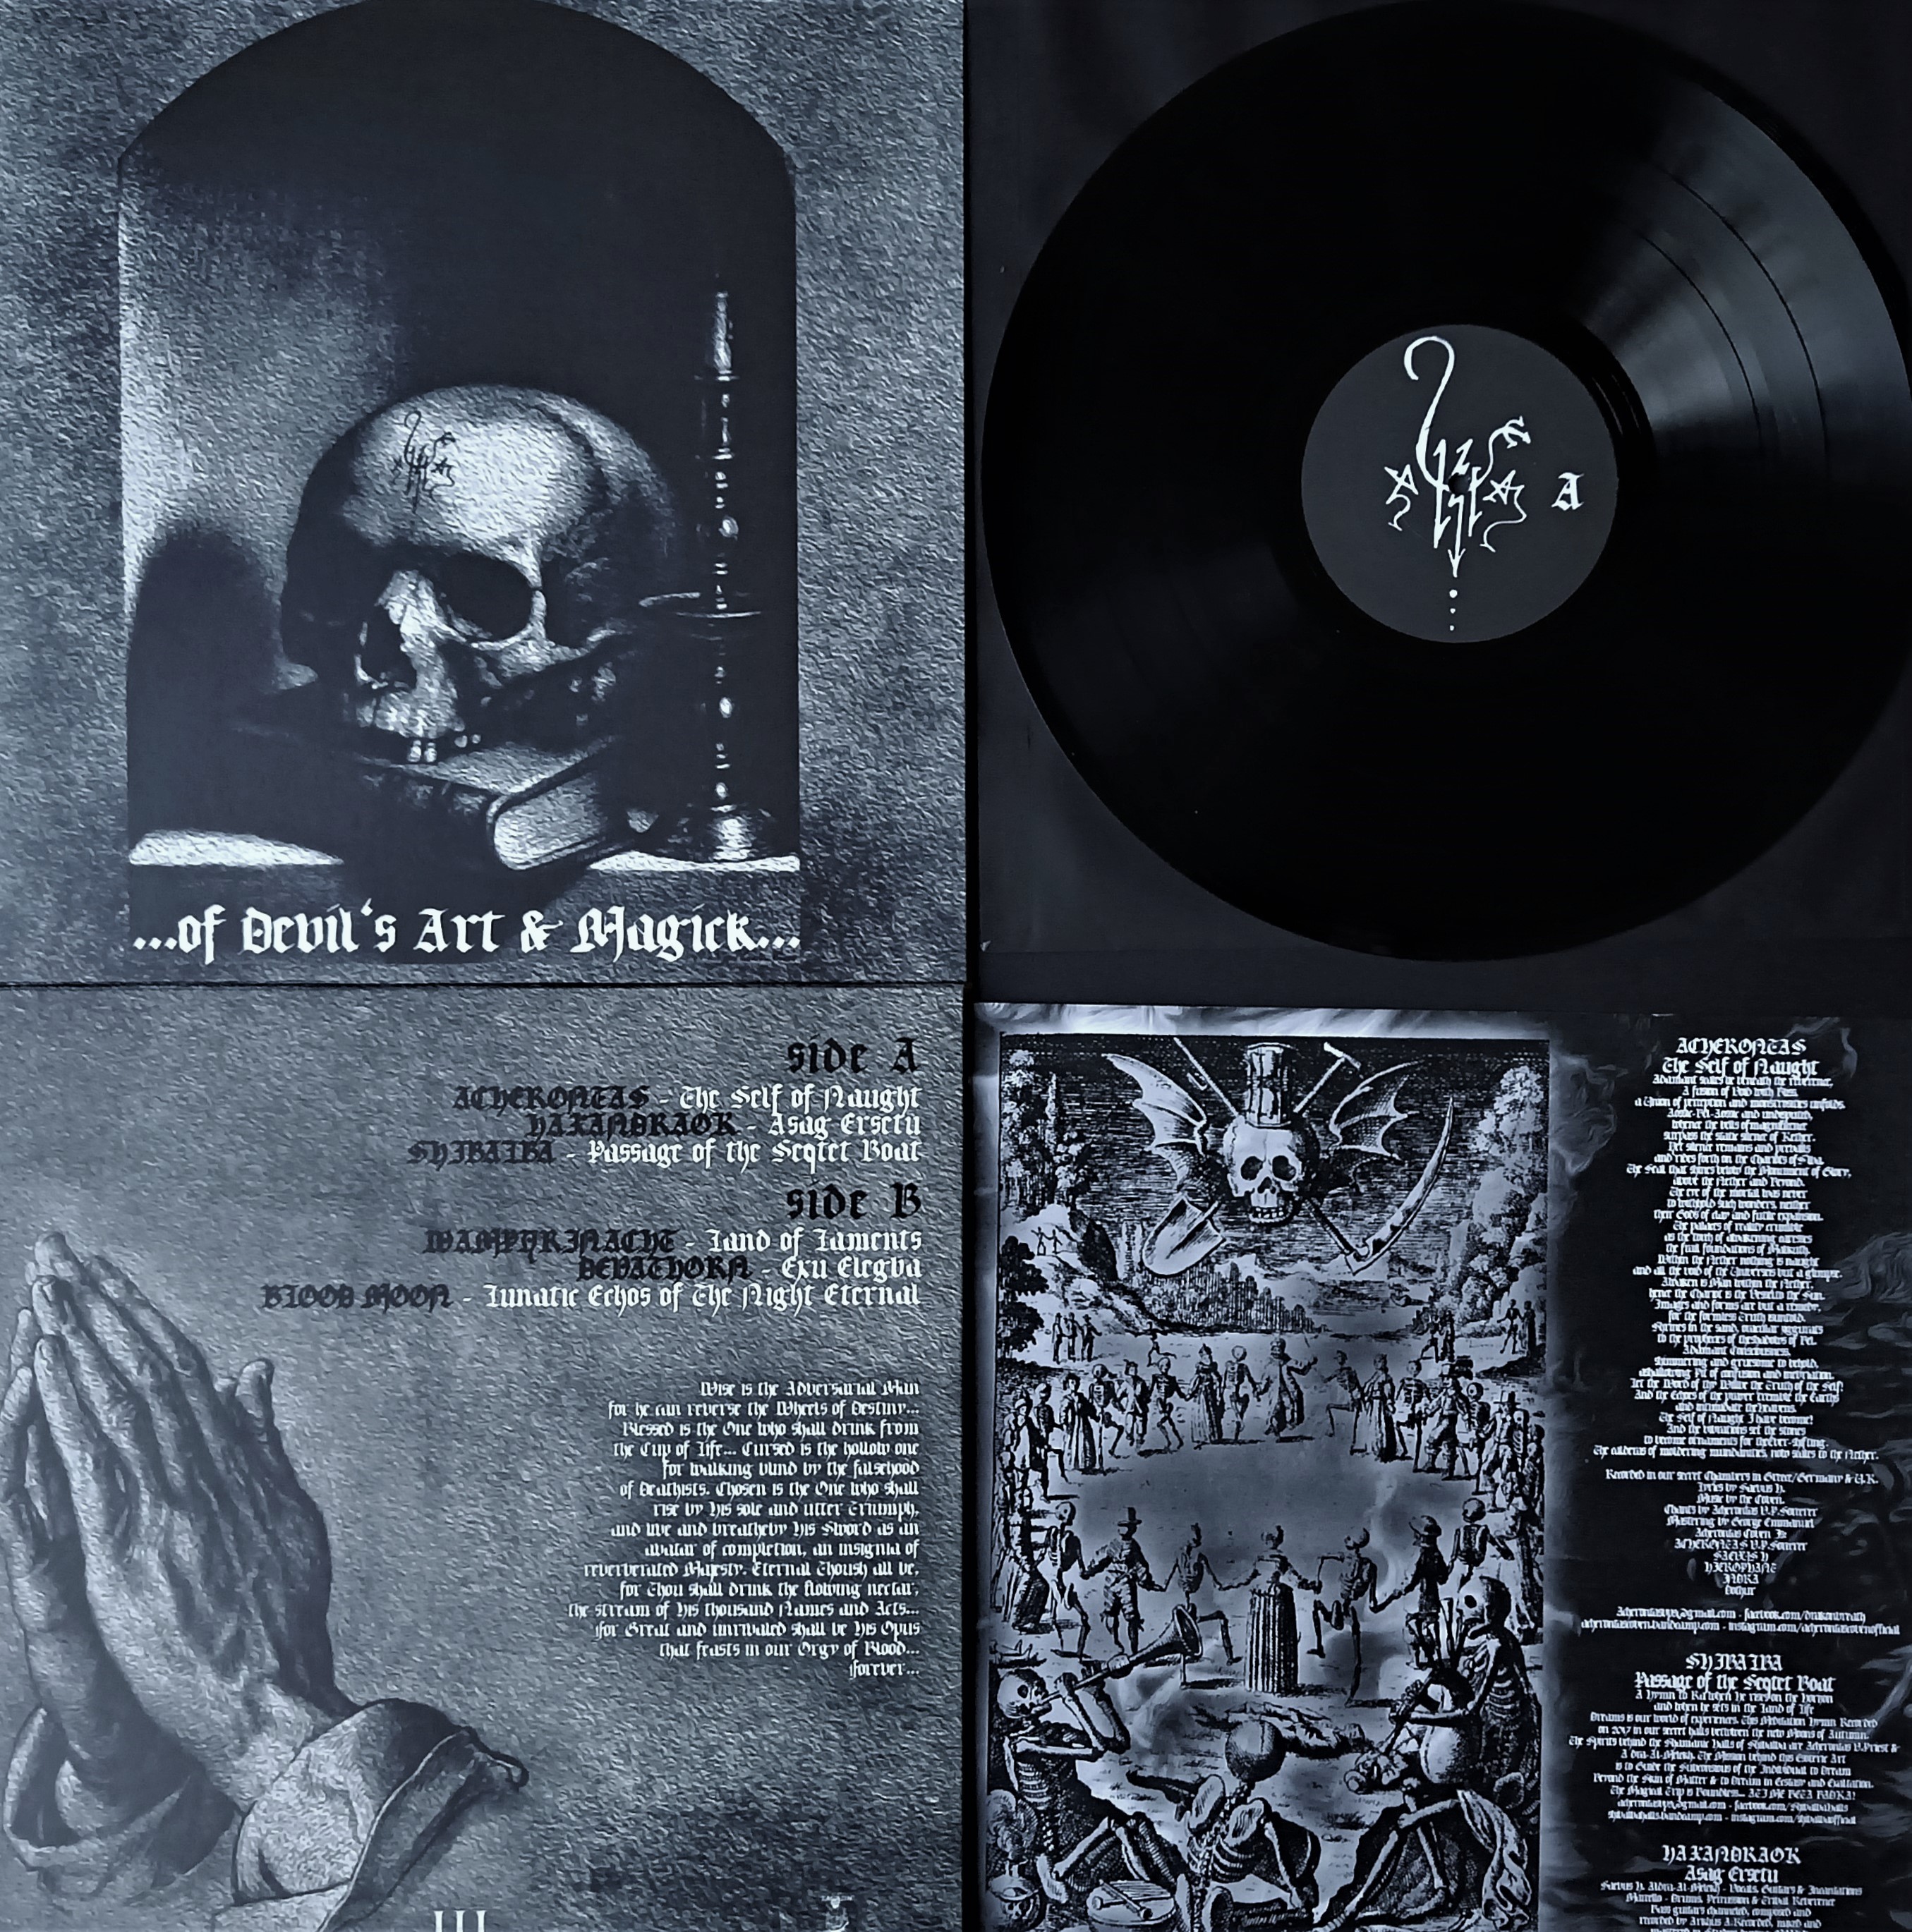 V/A - Of Devil's Art & Magick LP